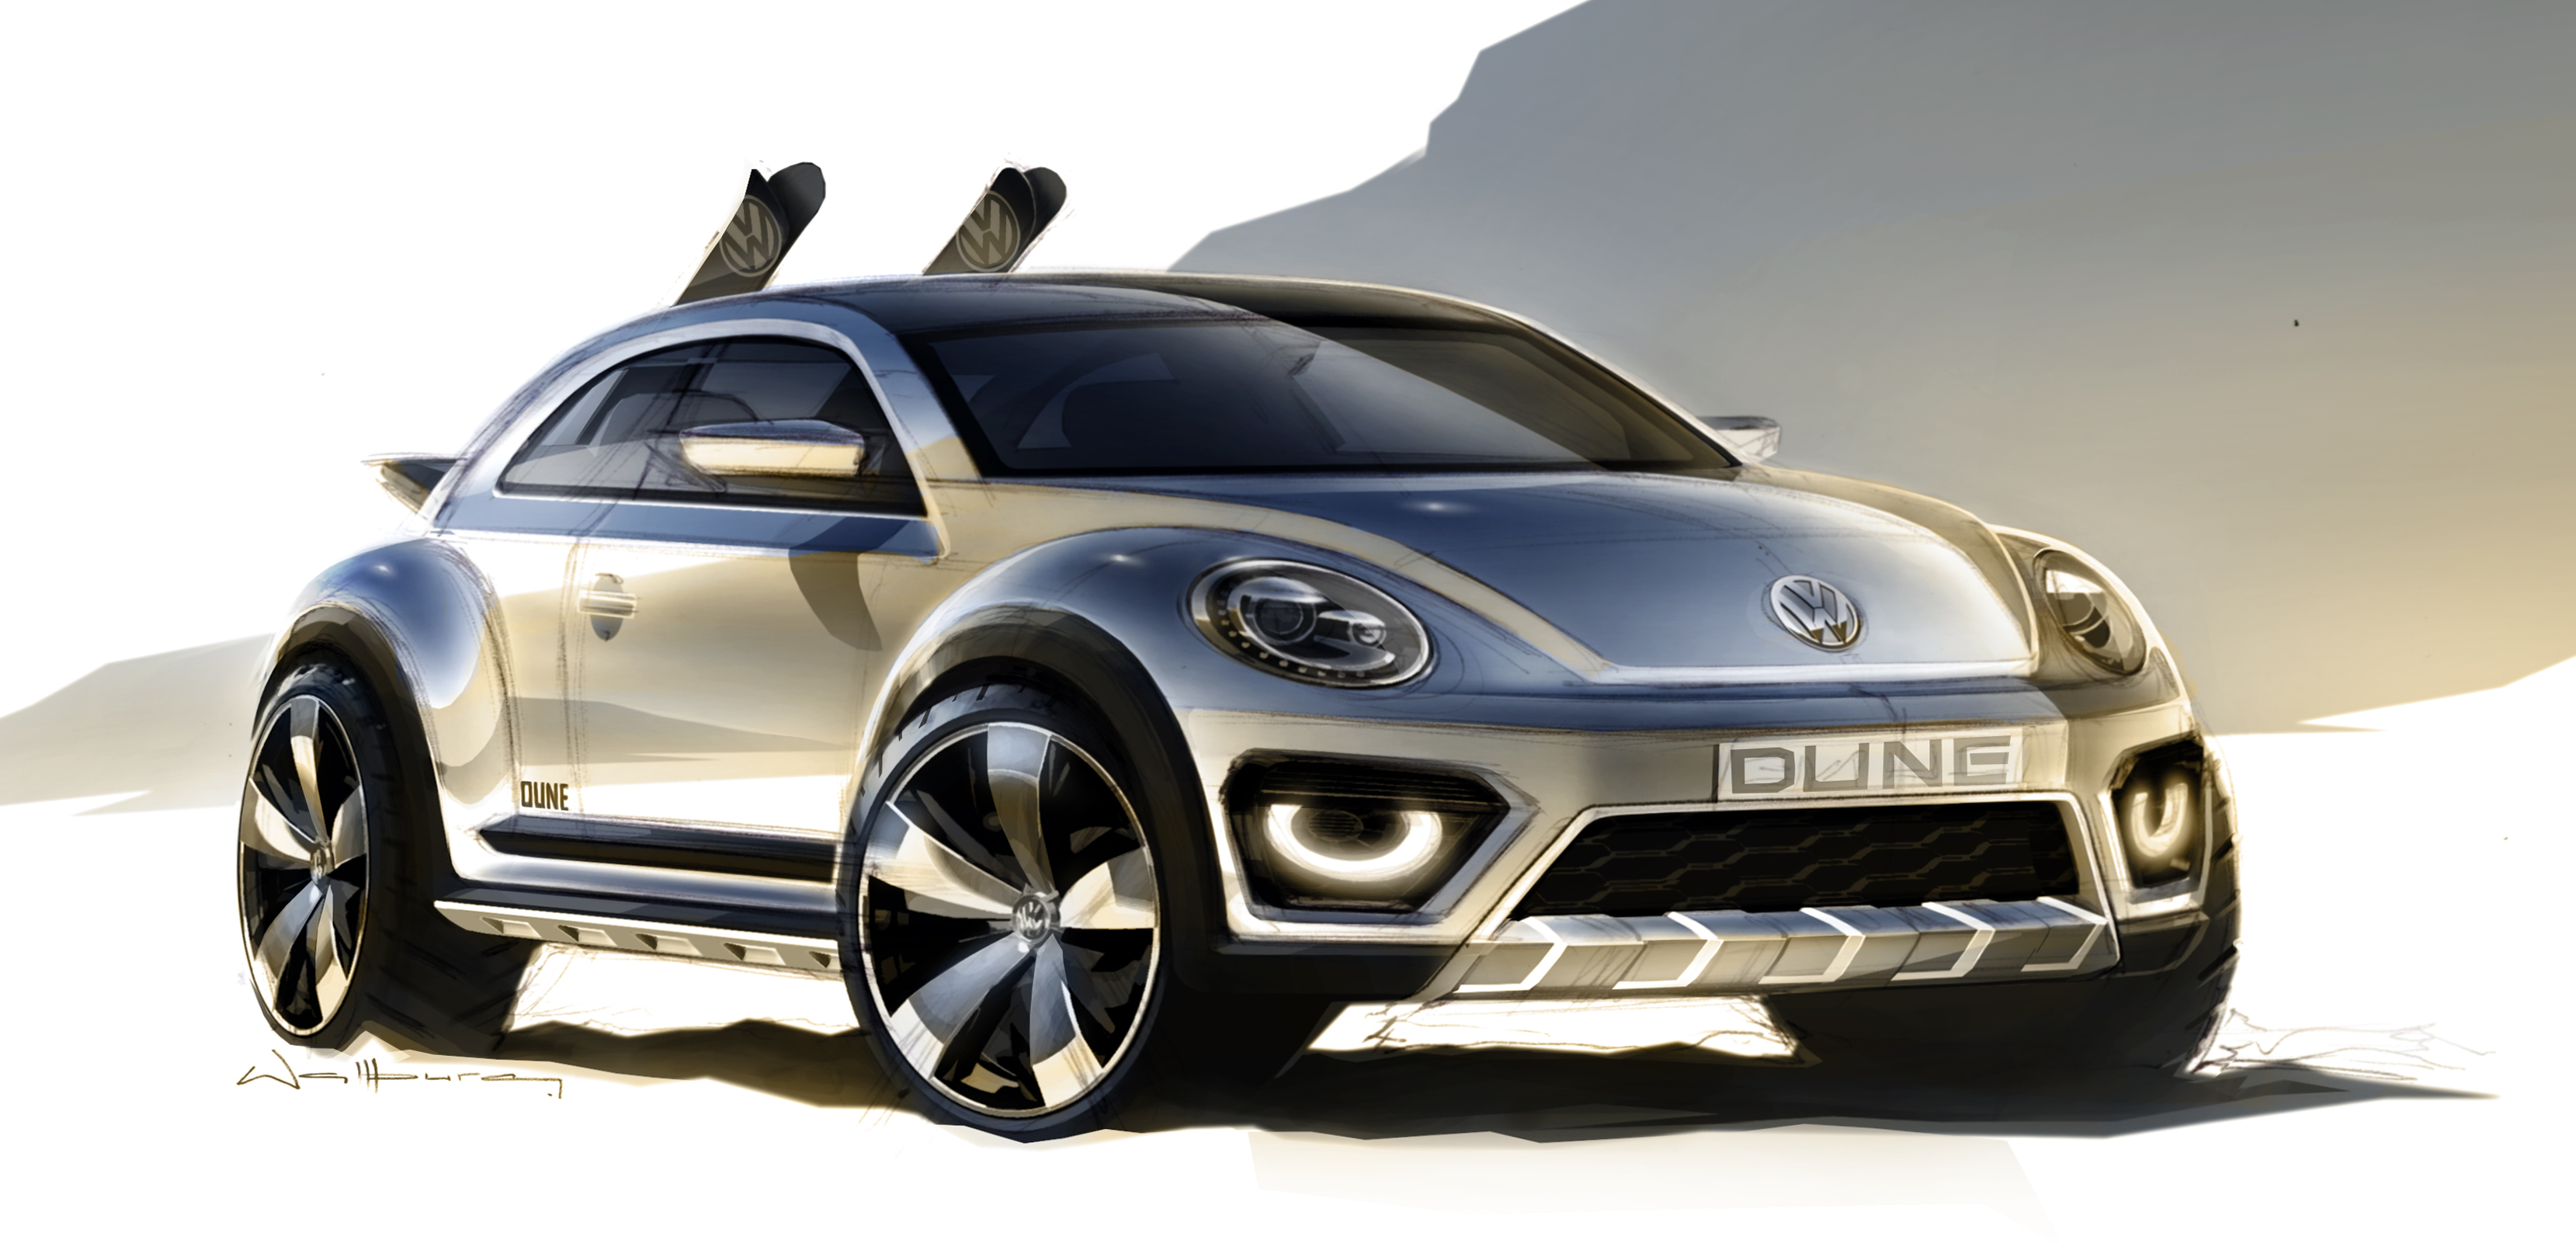 Images of 2014 Volkswagen Beetle Dune Concept | 3318x1619